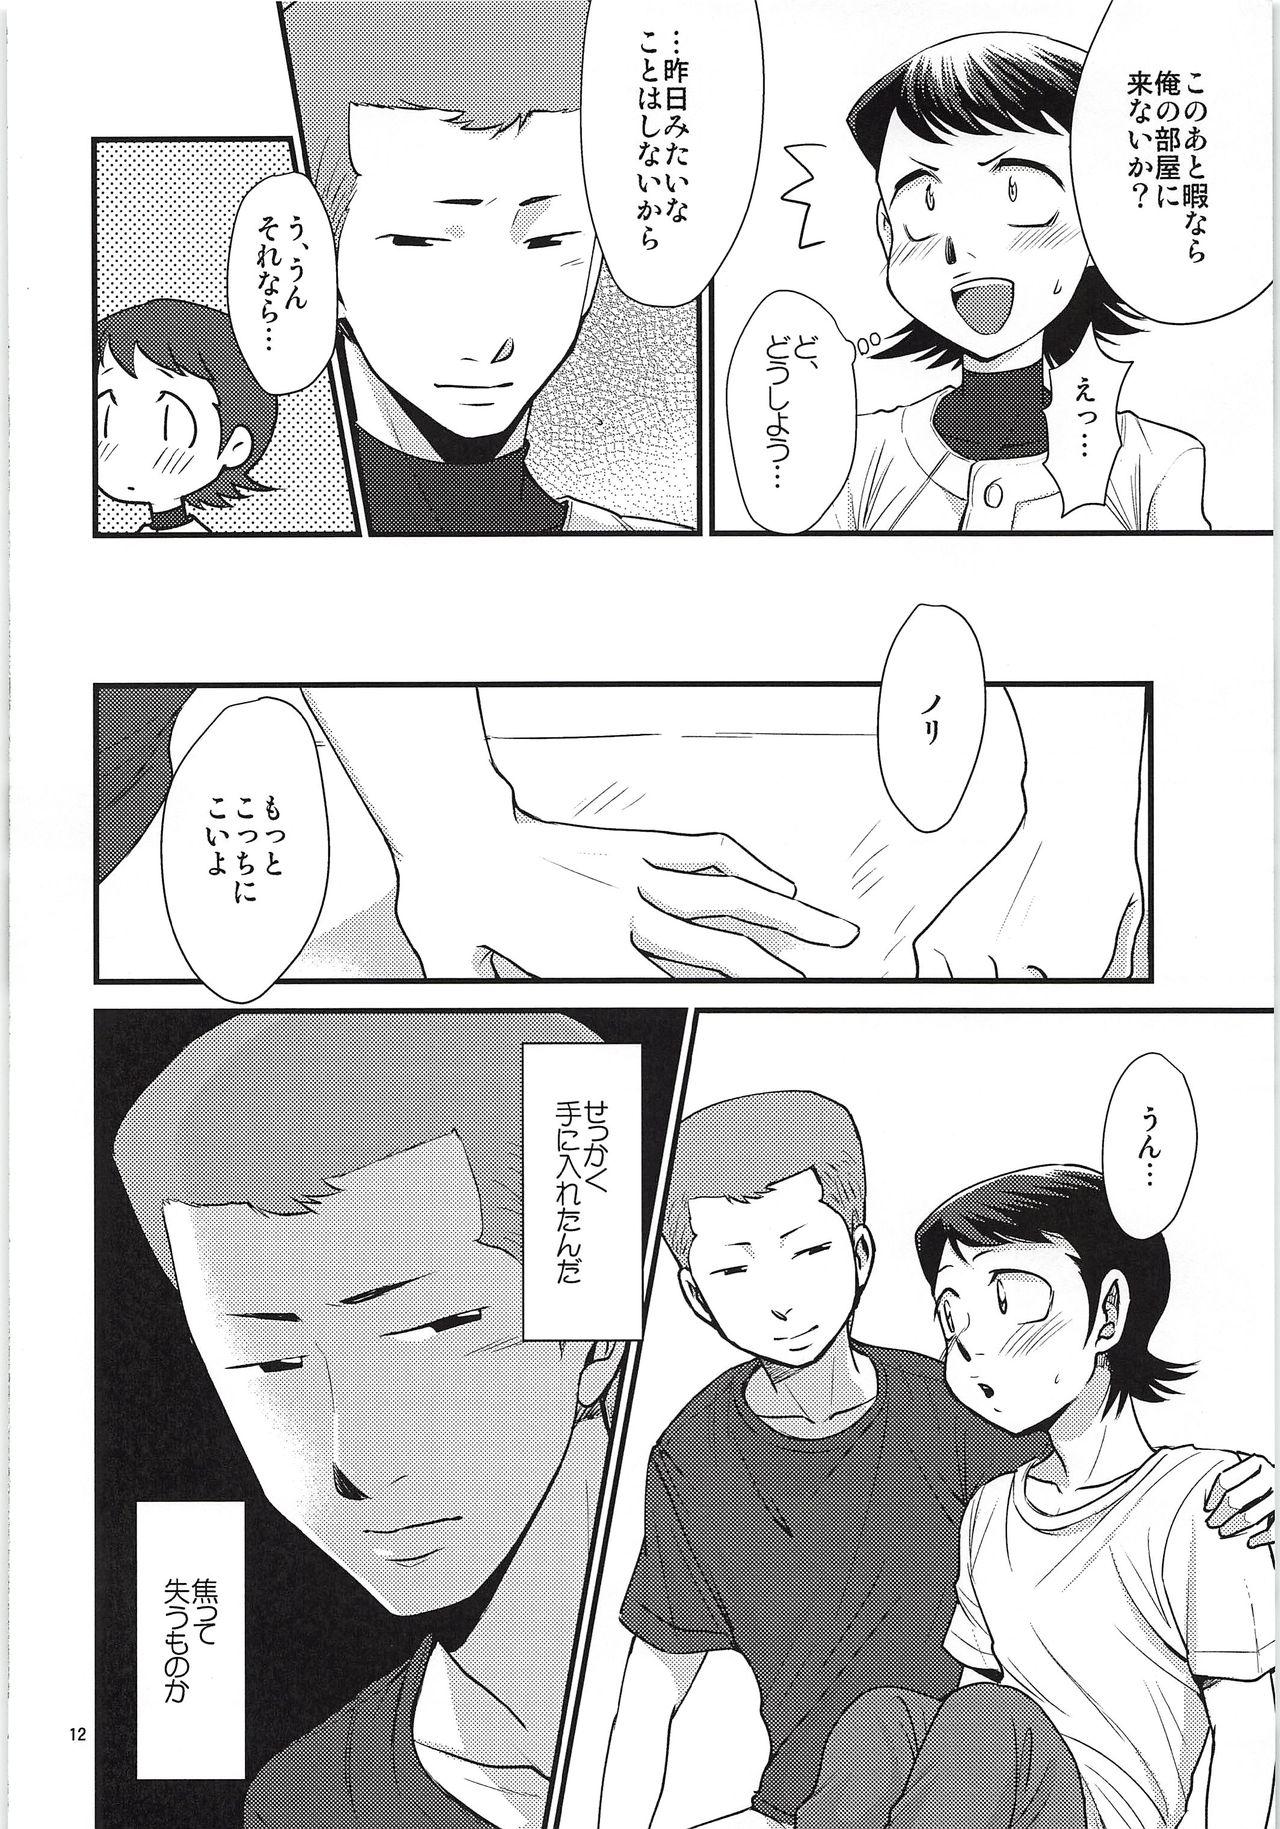 Fun Tsukiatte 3 Nichimenanoni Kareshi ga Guigui Semetekuru Ken - Daiya no ace Lovers - Page 11